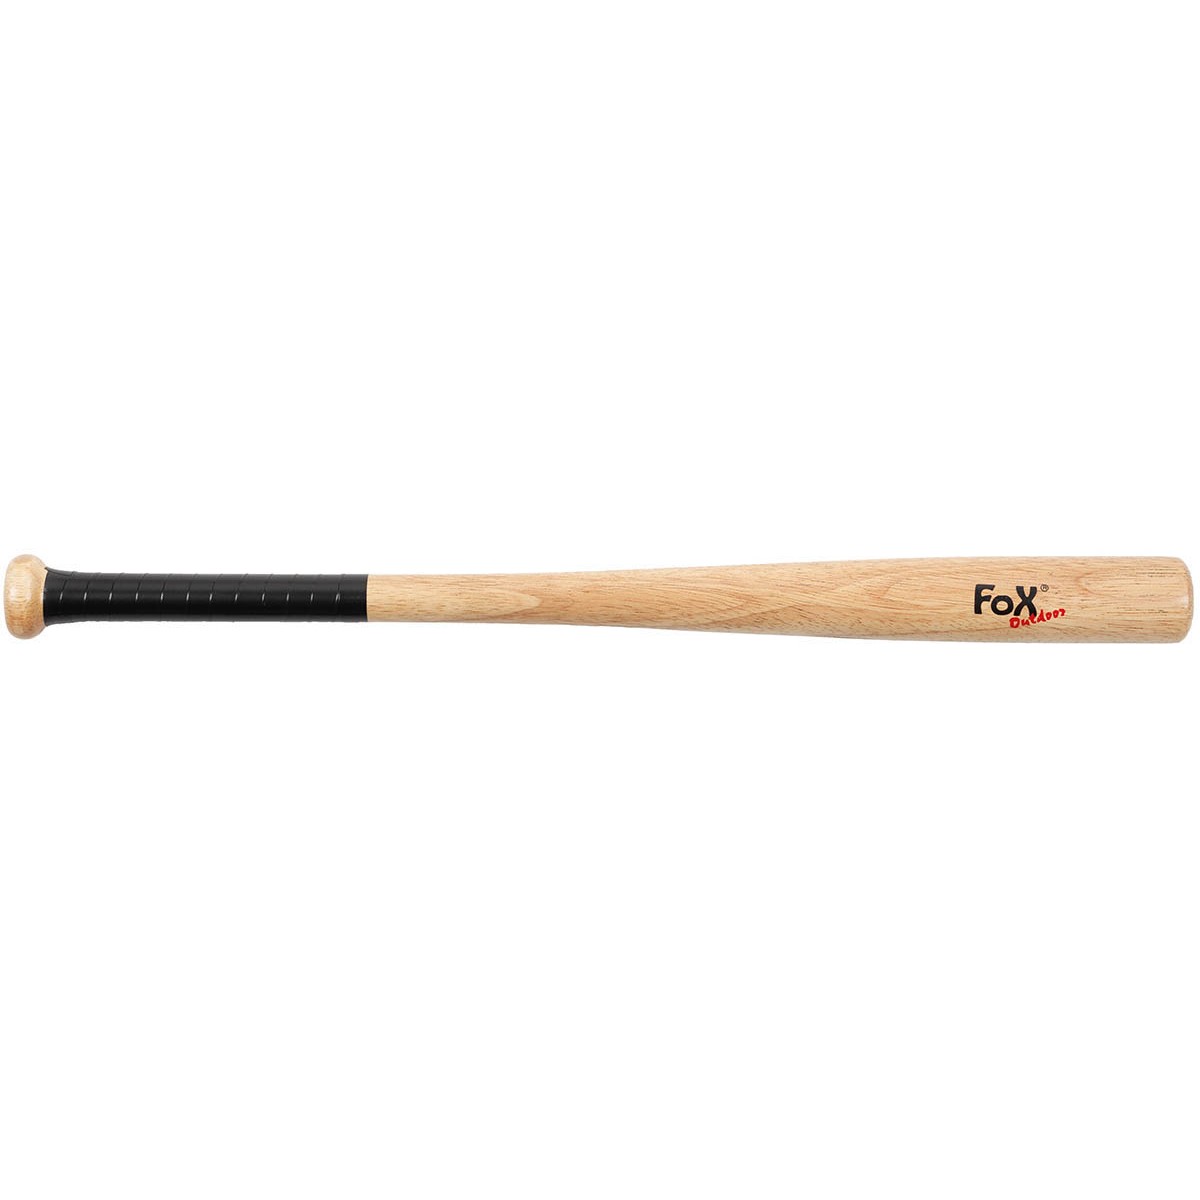 Baseballová pálka MFH 26 dřevěná - hnědá